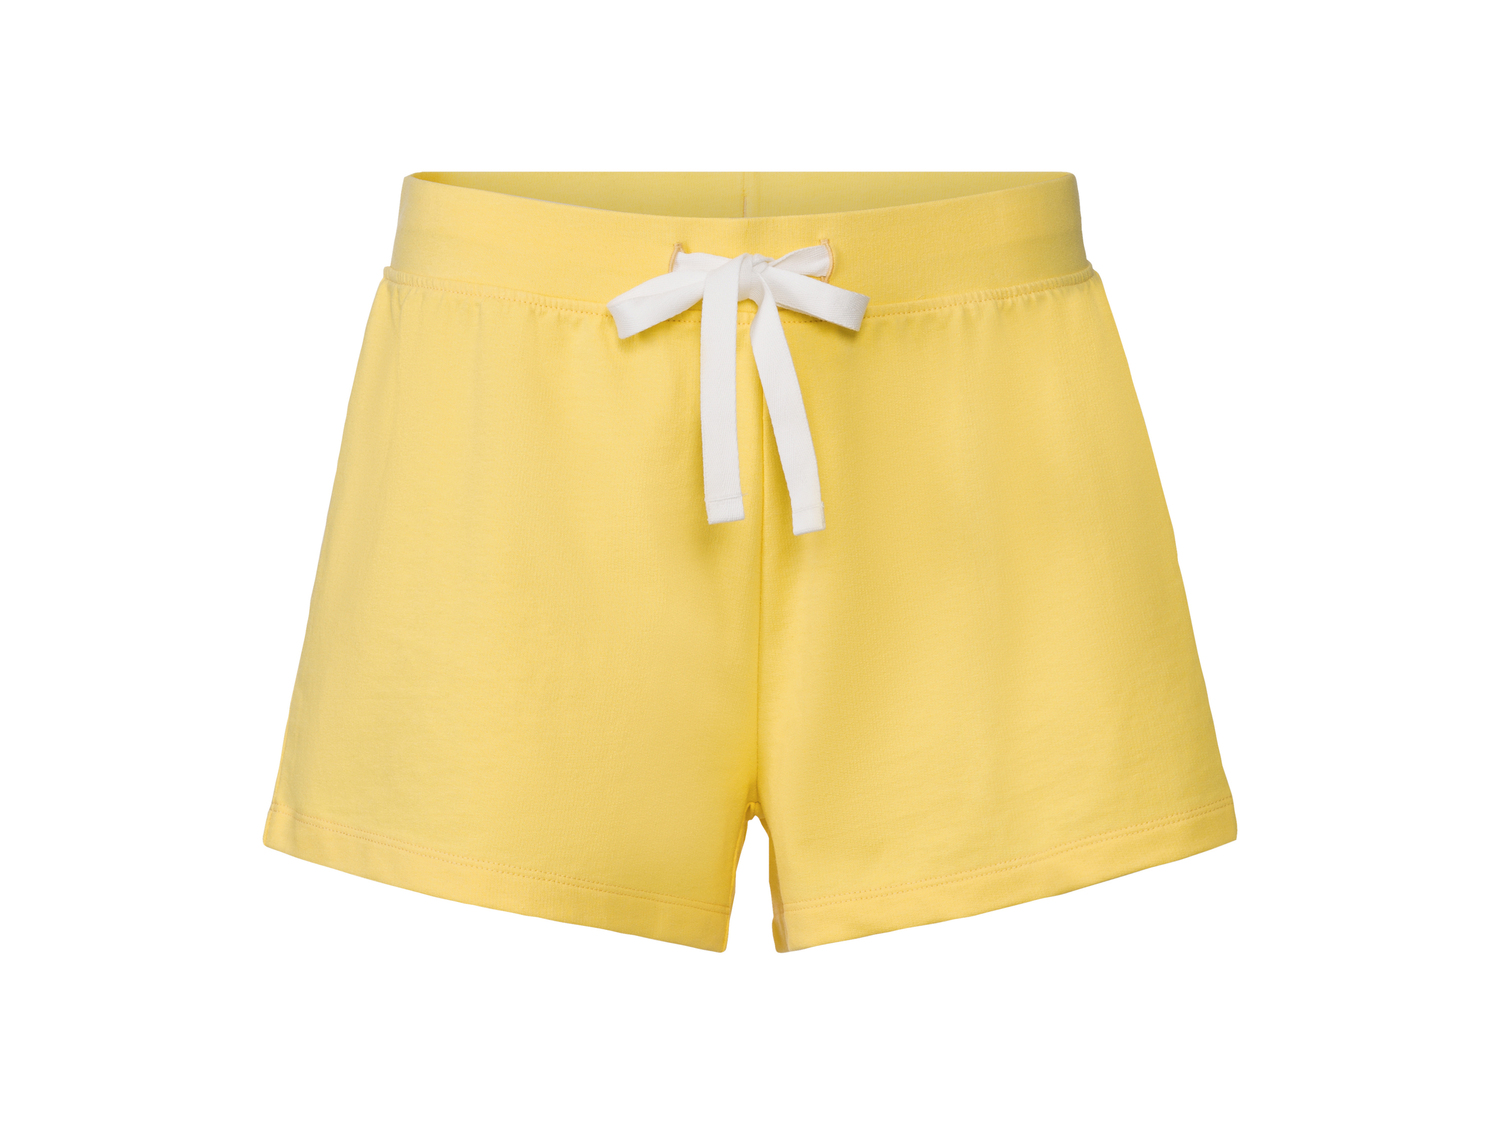 Shorts da donna Esmara, prezzo 3.99 &#8364; 
Misure: S-L
Taglie disponibili

Caratteristiche

- ...